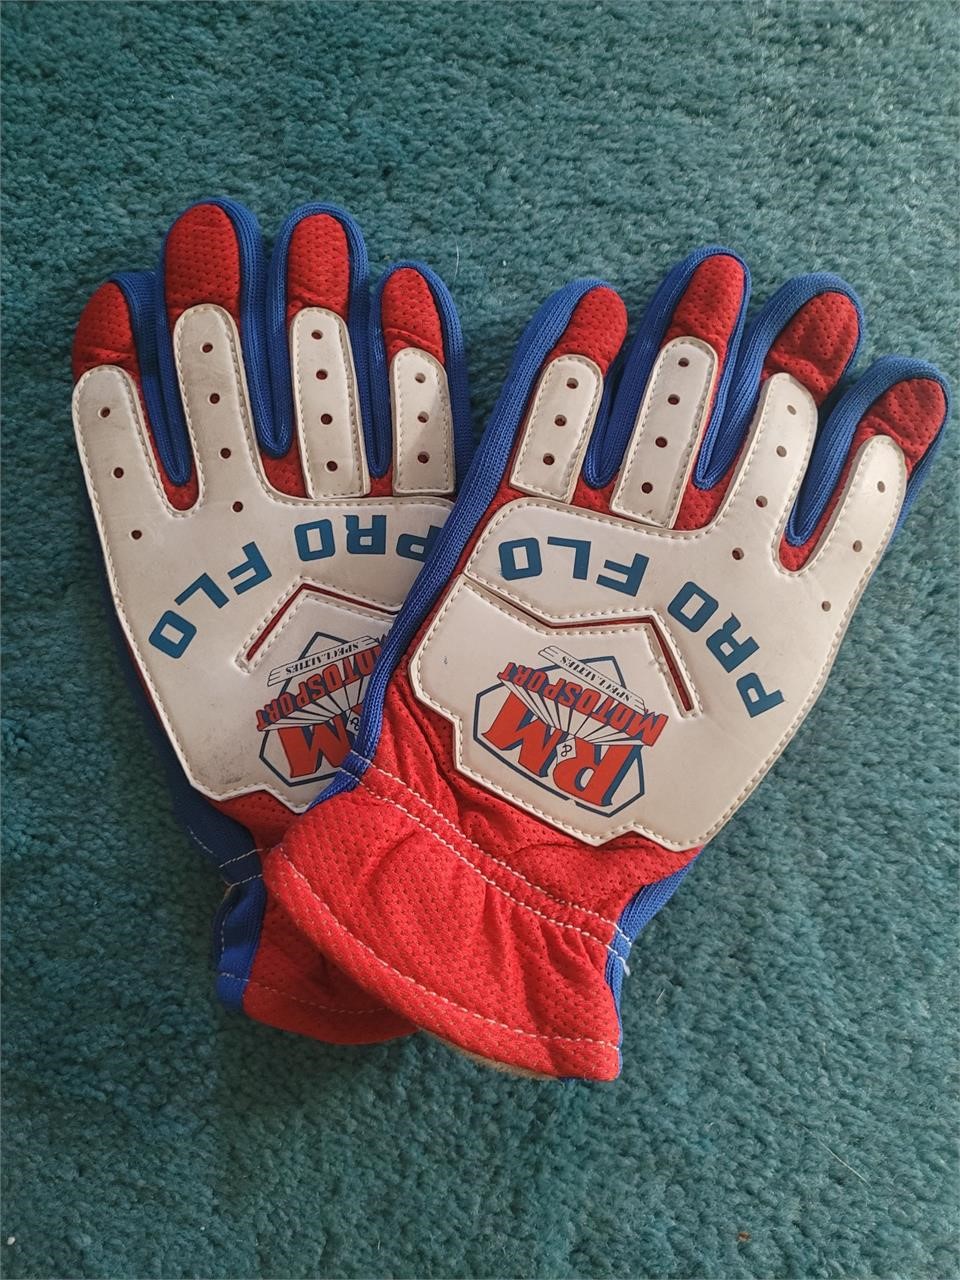 Vintage sports gloves